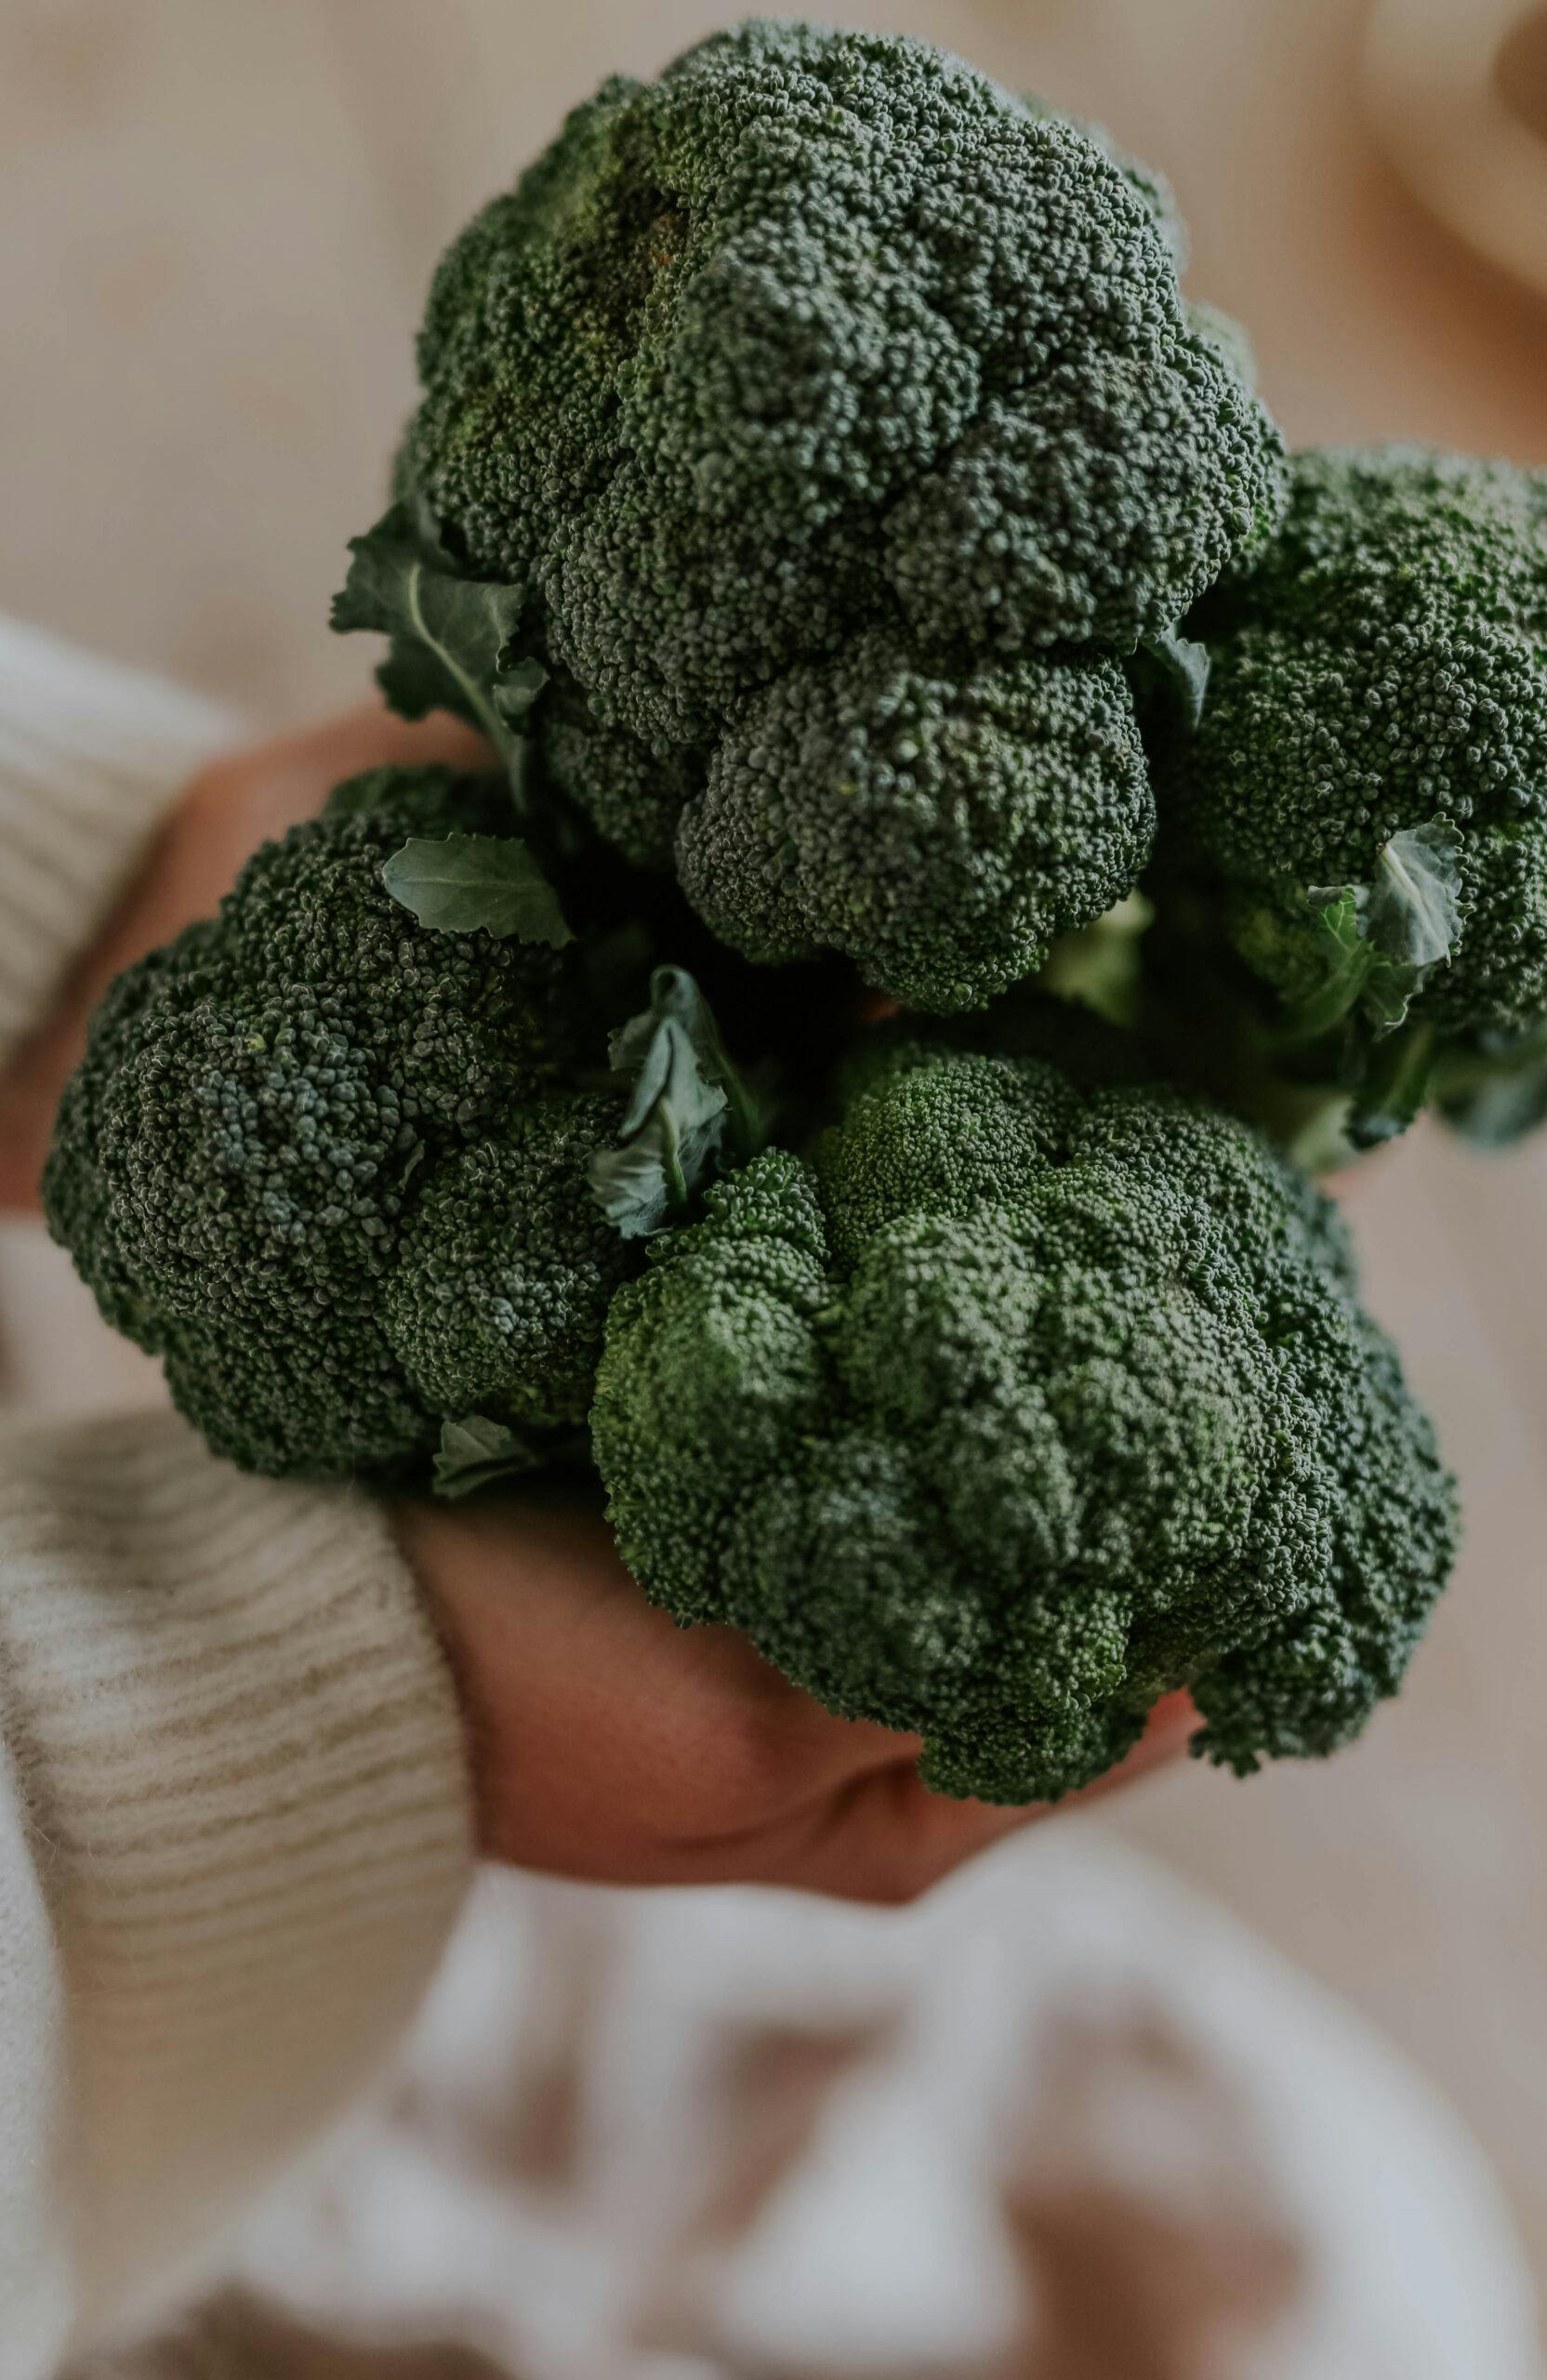 anna kubel håller upp broccoli